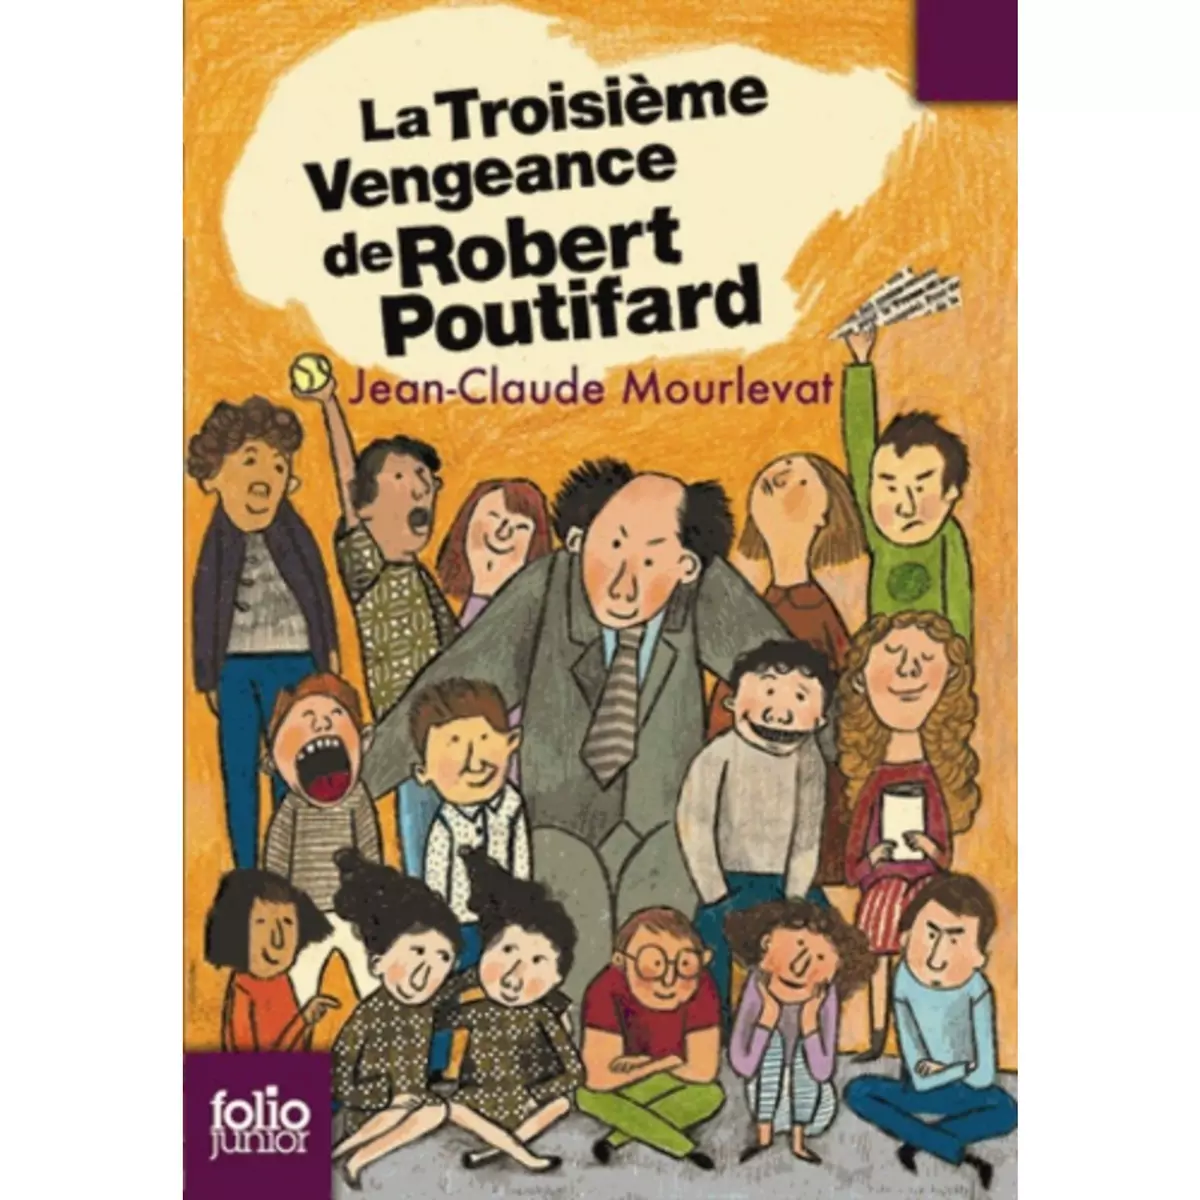  LA TROISIEME VENGEANCE DE ROBERT POUTIFARD, Mourlevat Jean-Claude